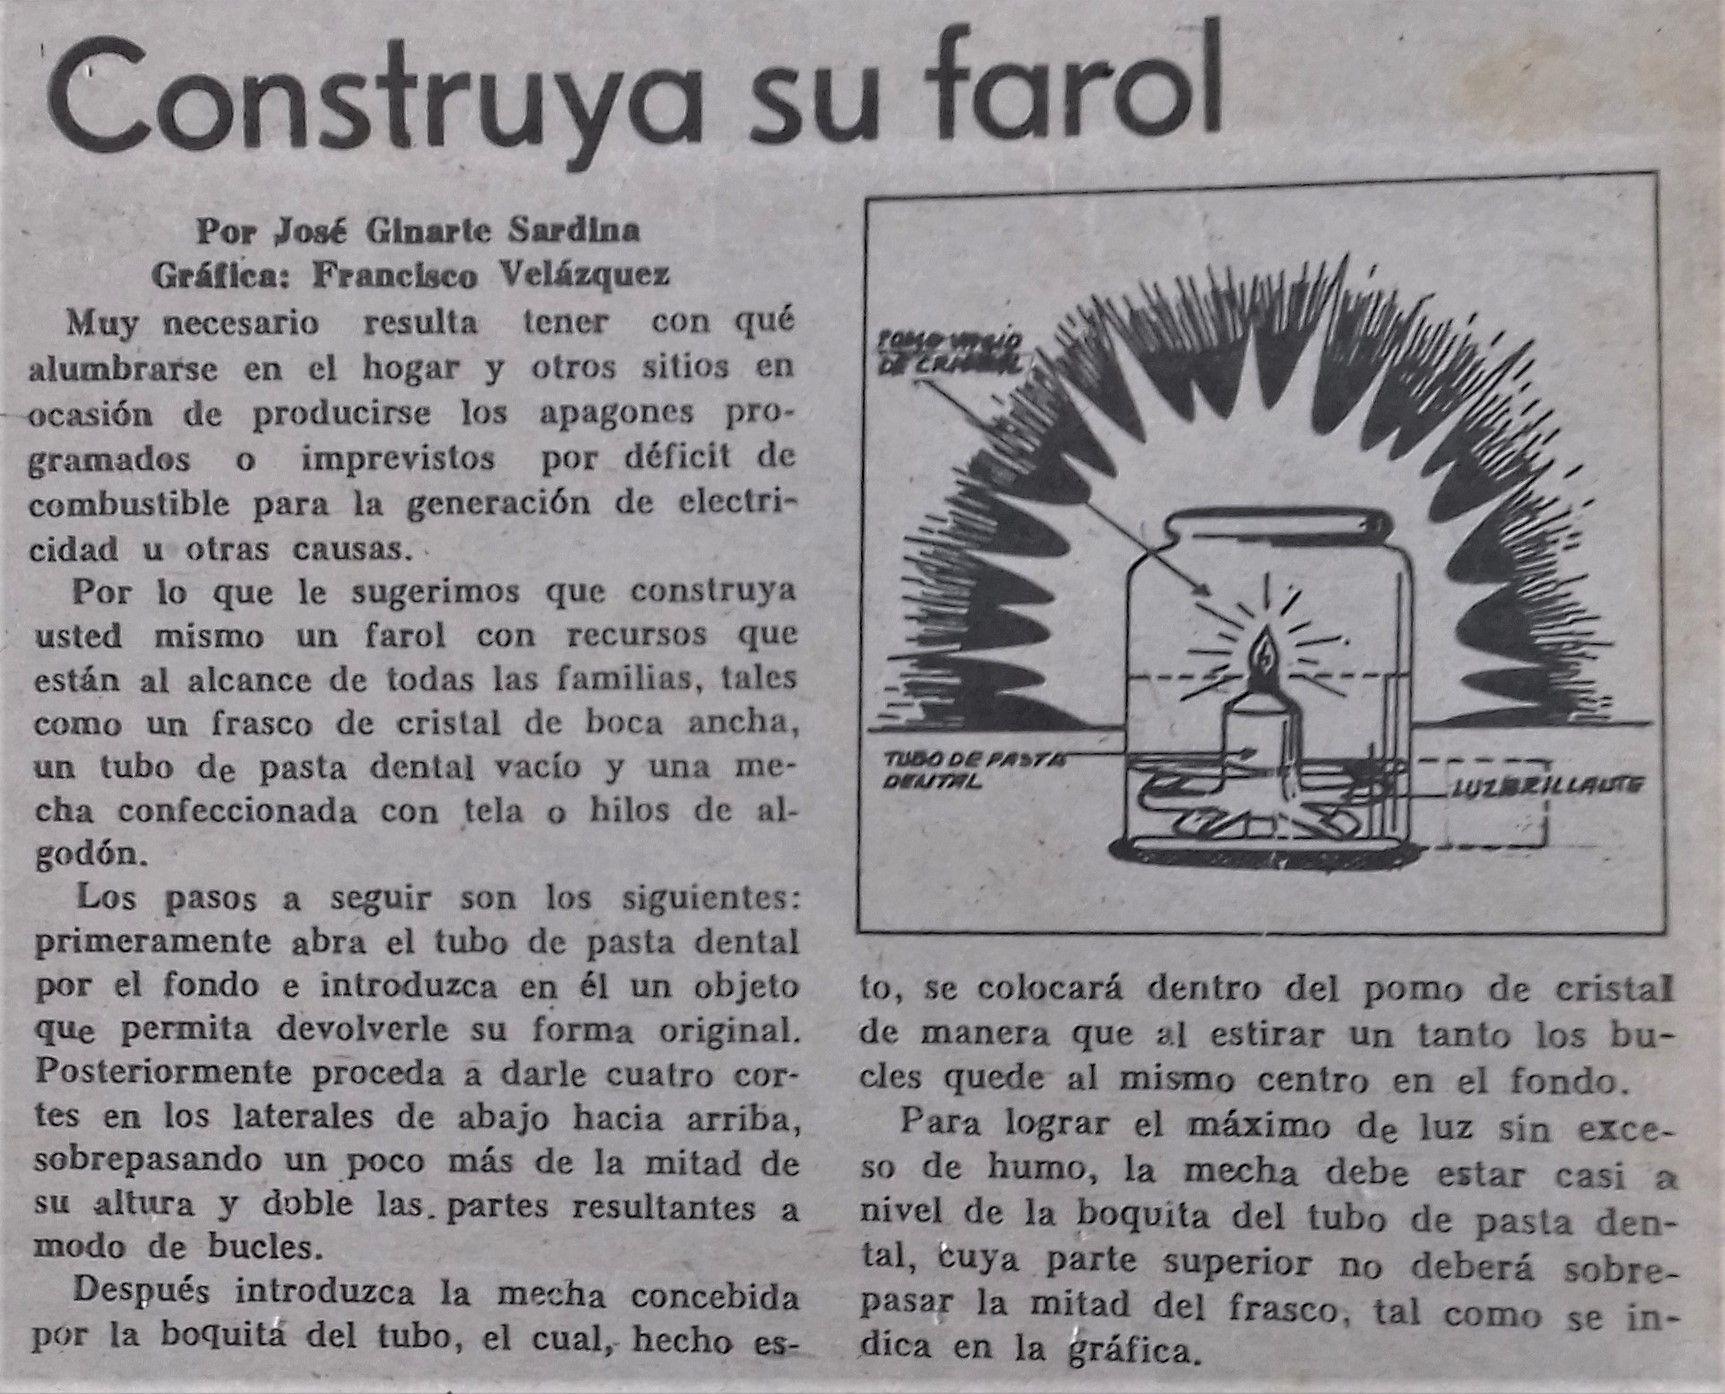 Capitalismo en Cuba, privatizaciones, economía estatal, inversiones de capital internacional. - Página 16 Semanario_Sierra_Maestra_1993_068124a720